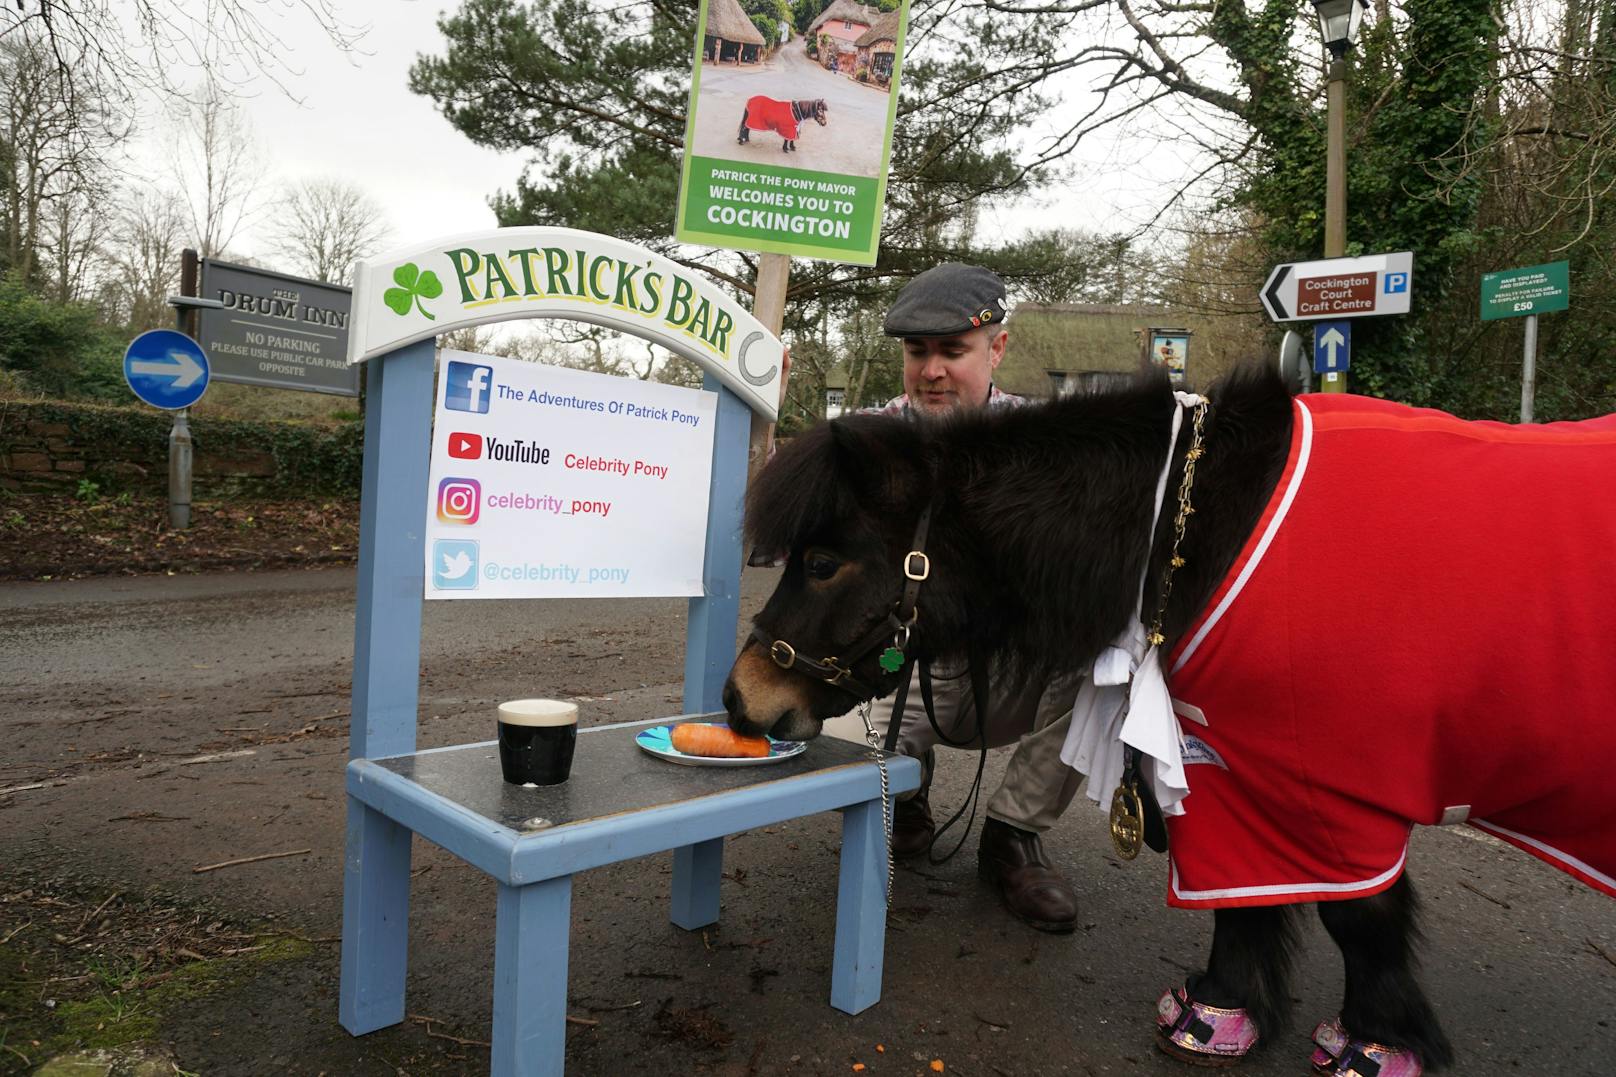 Nach seinem Spaziergang durch das Dorf frisst Bürgermeister Patrick eine Karotte und nimmt einen Schluck Guiness an seiner mobilen, hellblauen "Patrick's Bar" - seine Besitzer sind überzeugt, dass dies in Maßen gesund für Ponys ist.